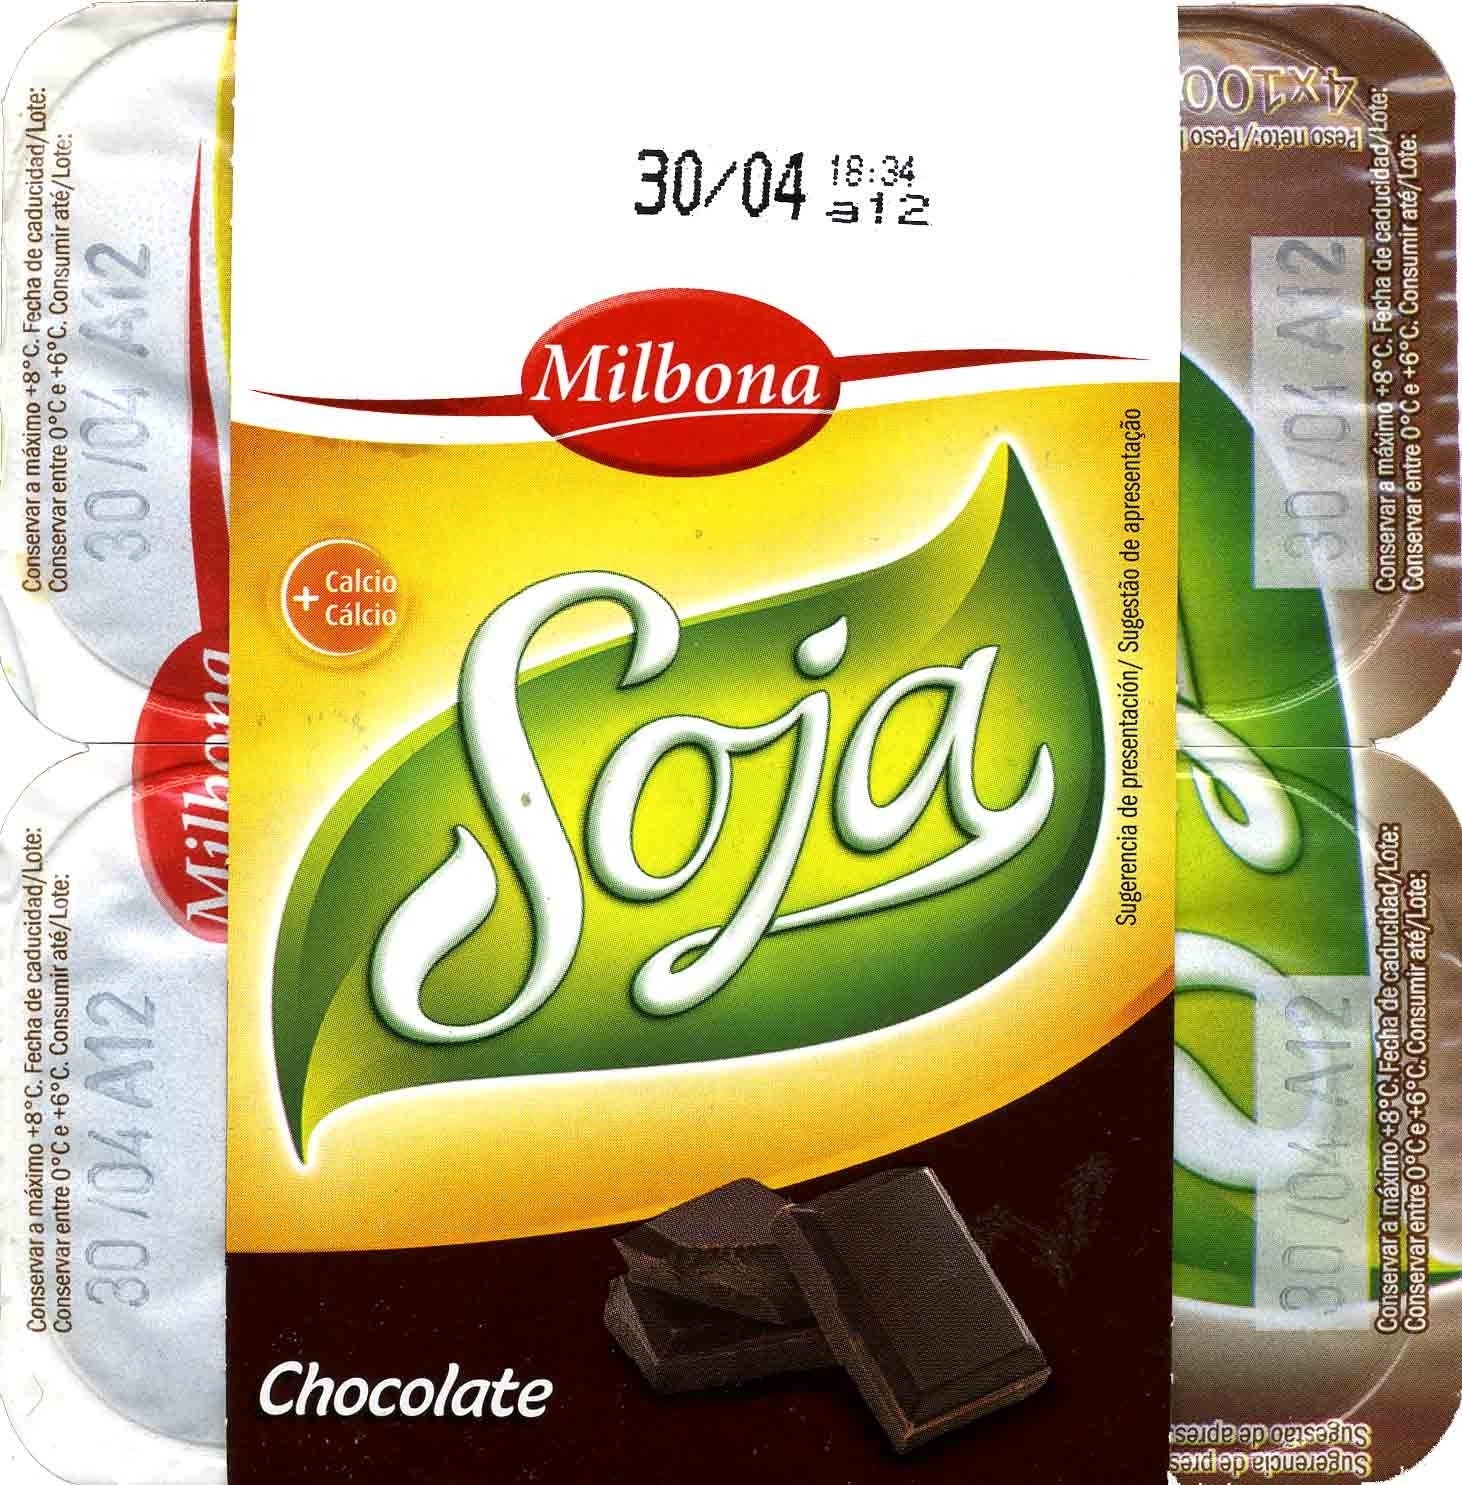 Postre de soja con chocolate - Product - es